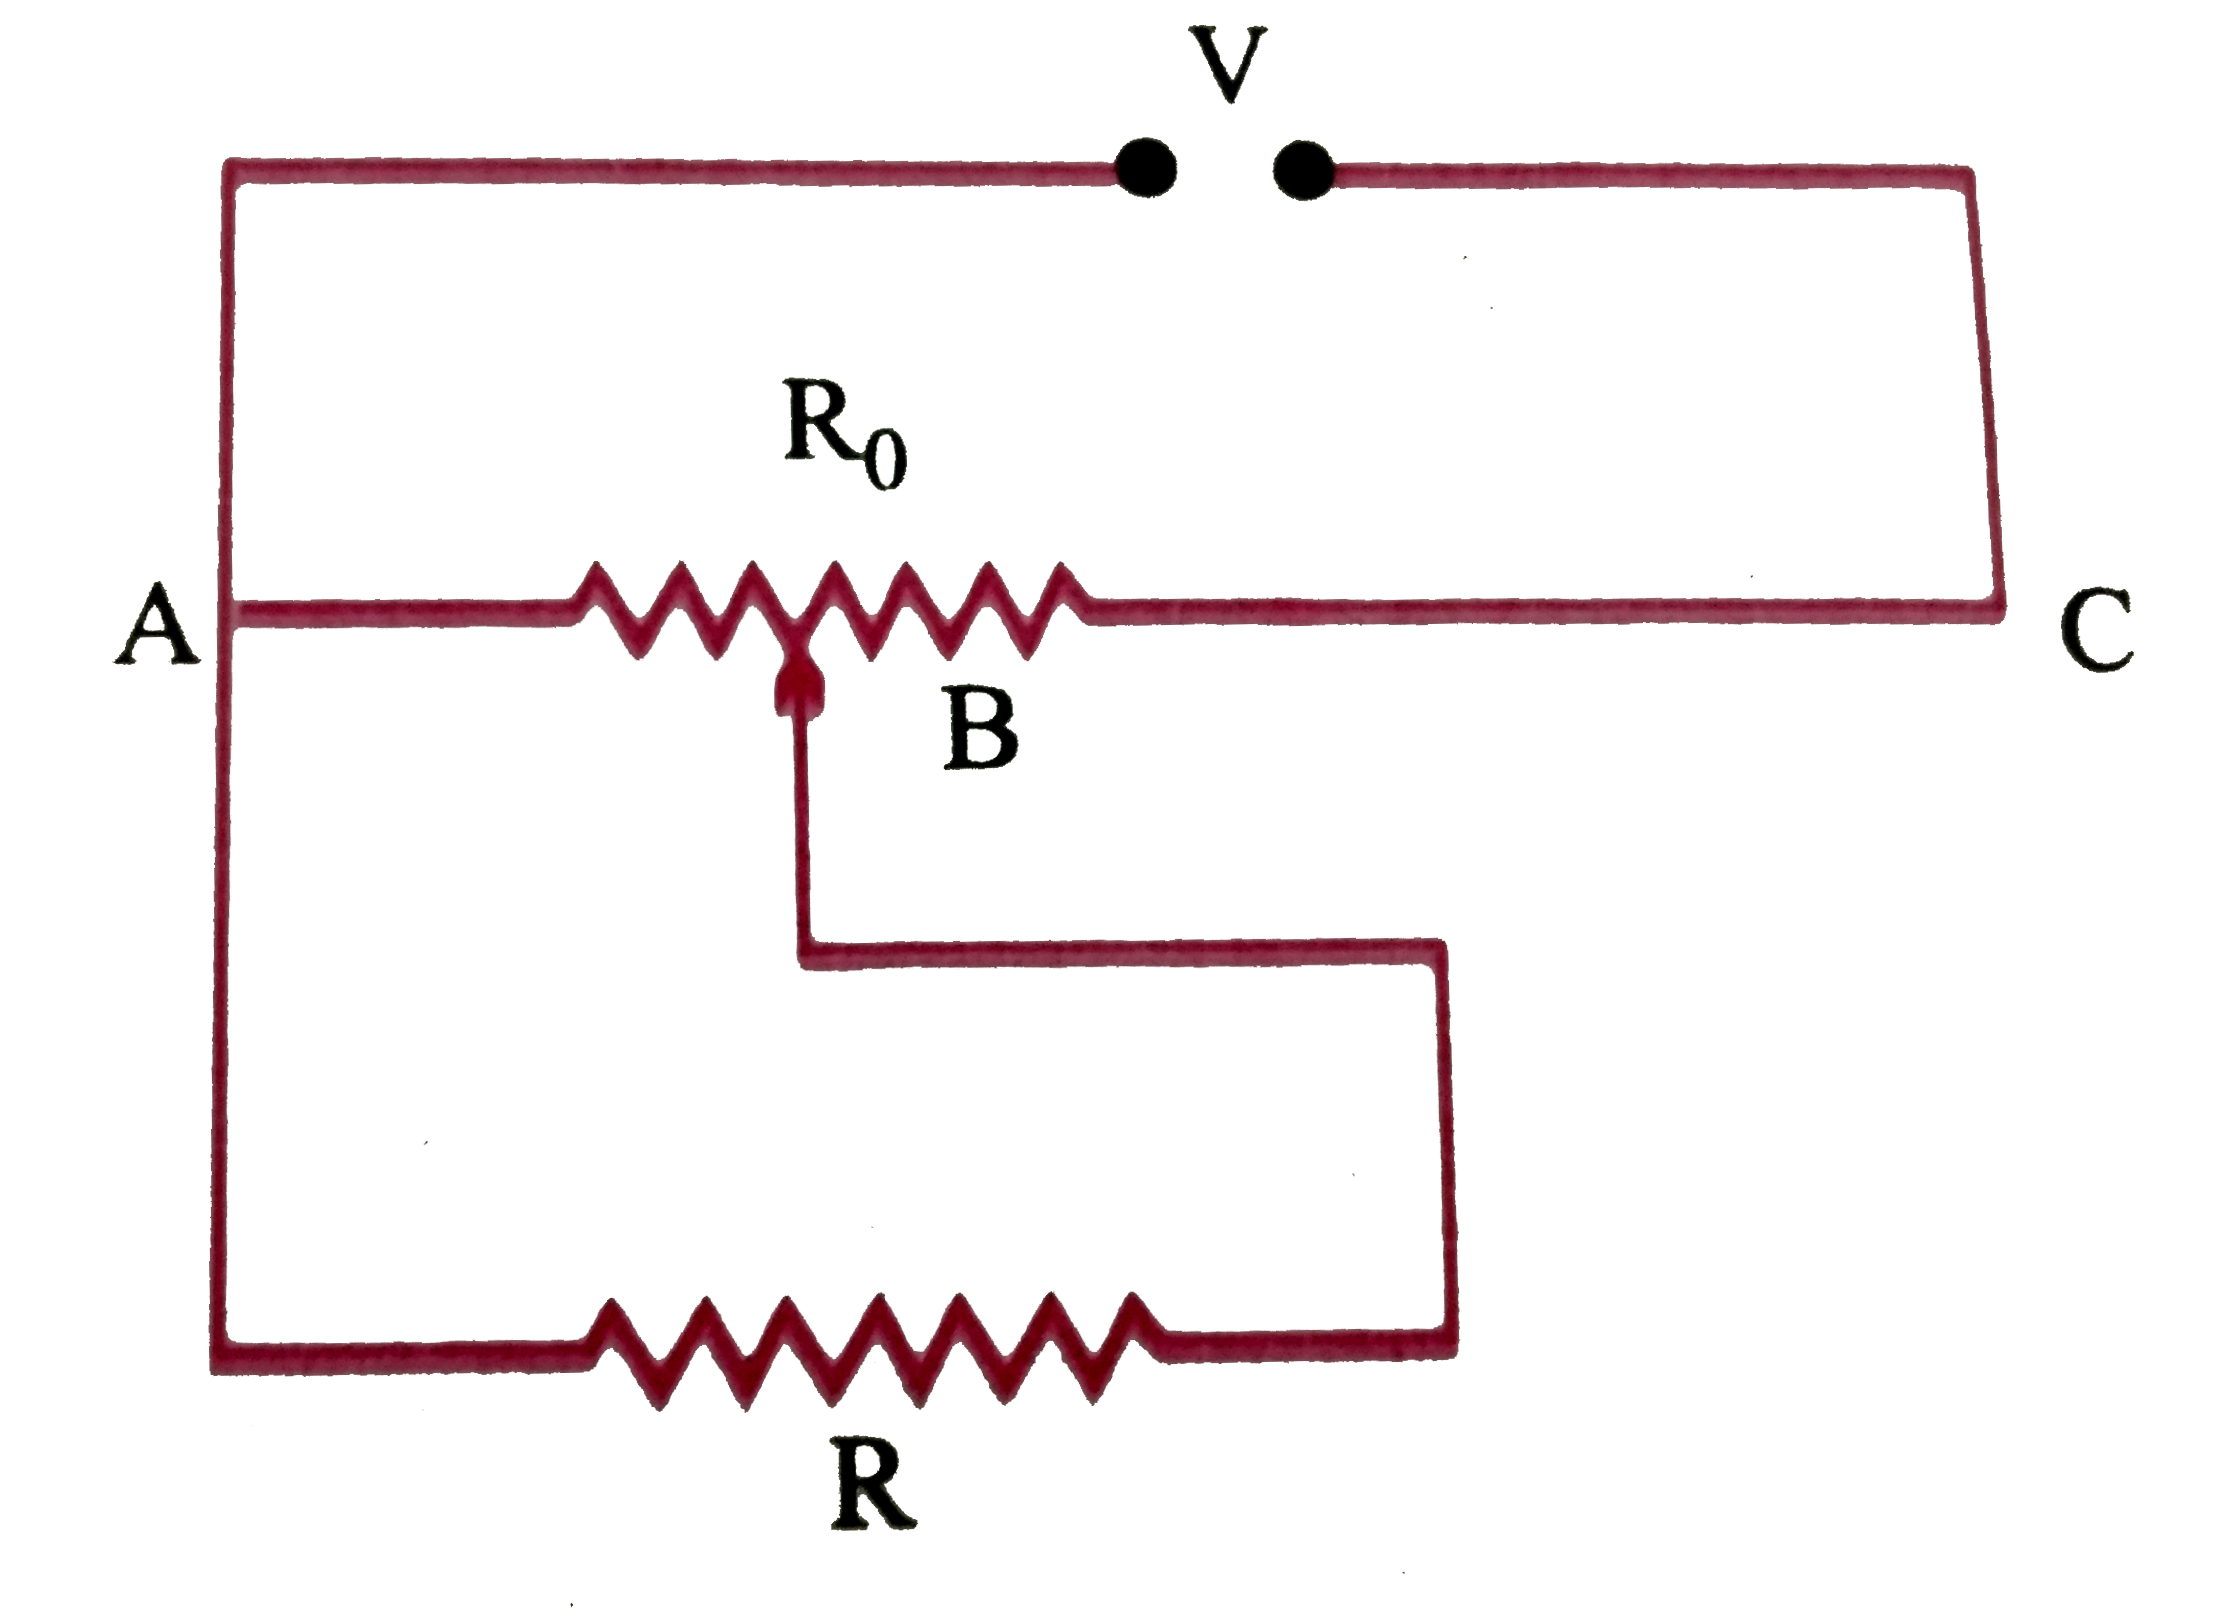 R Omega का एक प्रतिरोध  एक विभवमापी   से  विद्युत धारा  प्राप्त  कर रहा है ।  विभवमापी  का कुल प्रतिरोध R(0)Omega   है ।  विभवमापी  को वोलटता V की आपूर्ति  की गई  है ।  जब सप्री संपर्क ( सरकने  वाले भाग या स्लाइड )  विभवमापी के तार  के मध्य में हो , तो  R  के सिरों  पर वोलटता के लिए व्यंजक  प्राप्त कीजिए ।